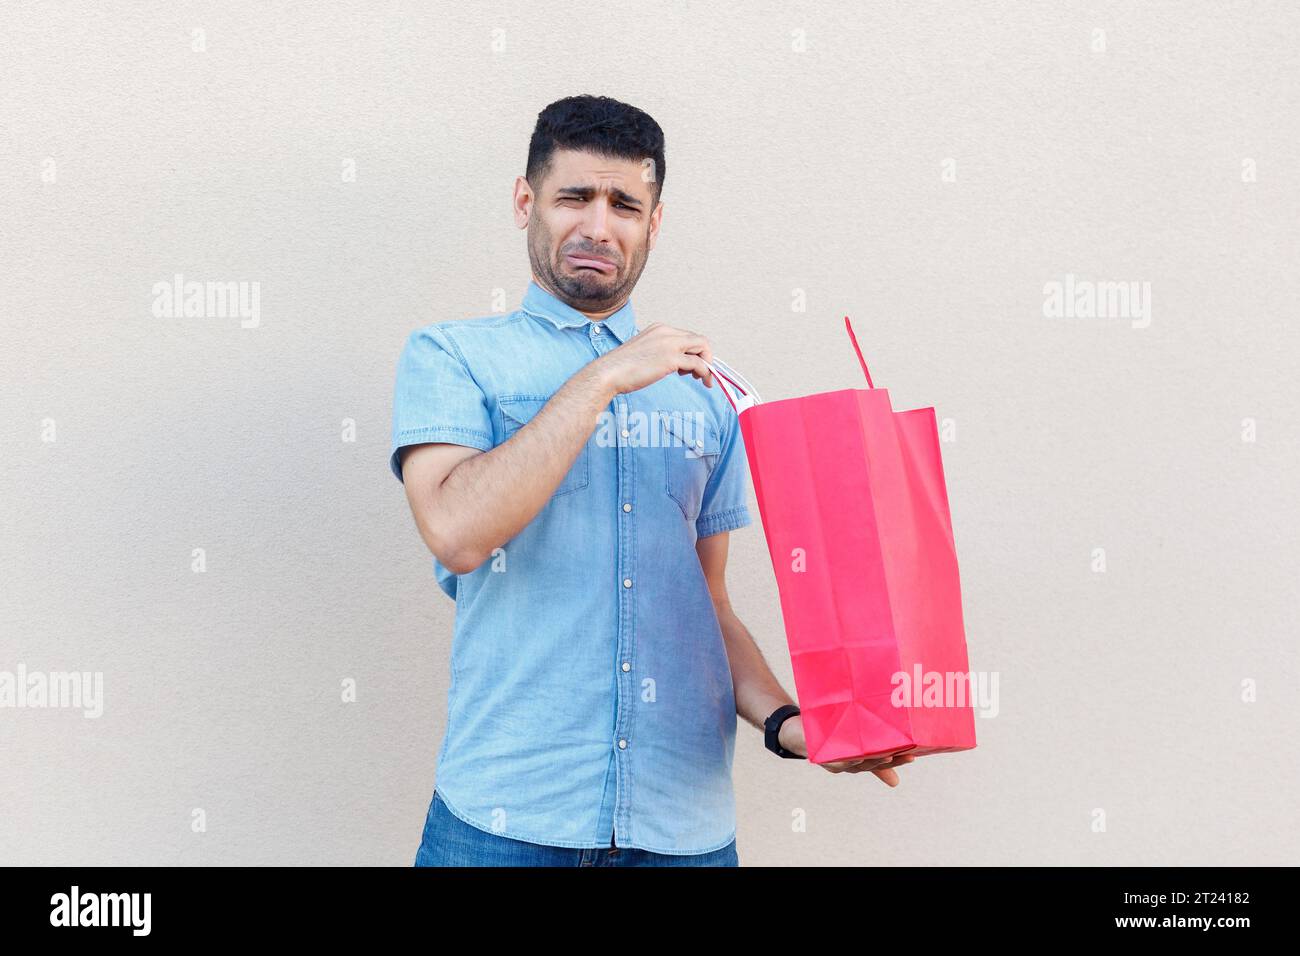 Porträt eines traurigen, gestressten, depressiven Mannes, der ein Jeanshemd trägt, enttäuscht von seinem Einkaufen im Einkaufszentrum ist, Papiertüte hält und weint. Innenstudio isoliert auf grauem Hintergrund. Stockfoto